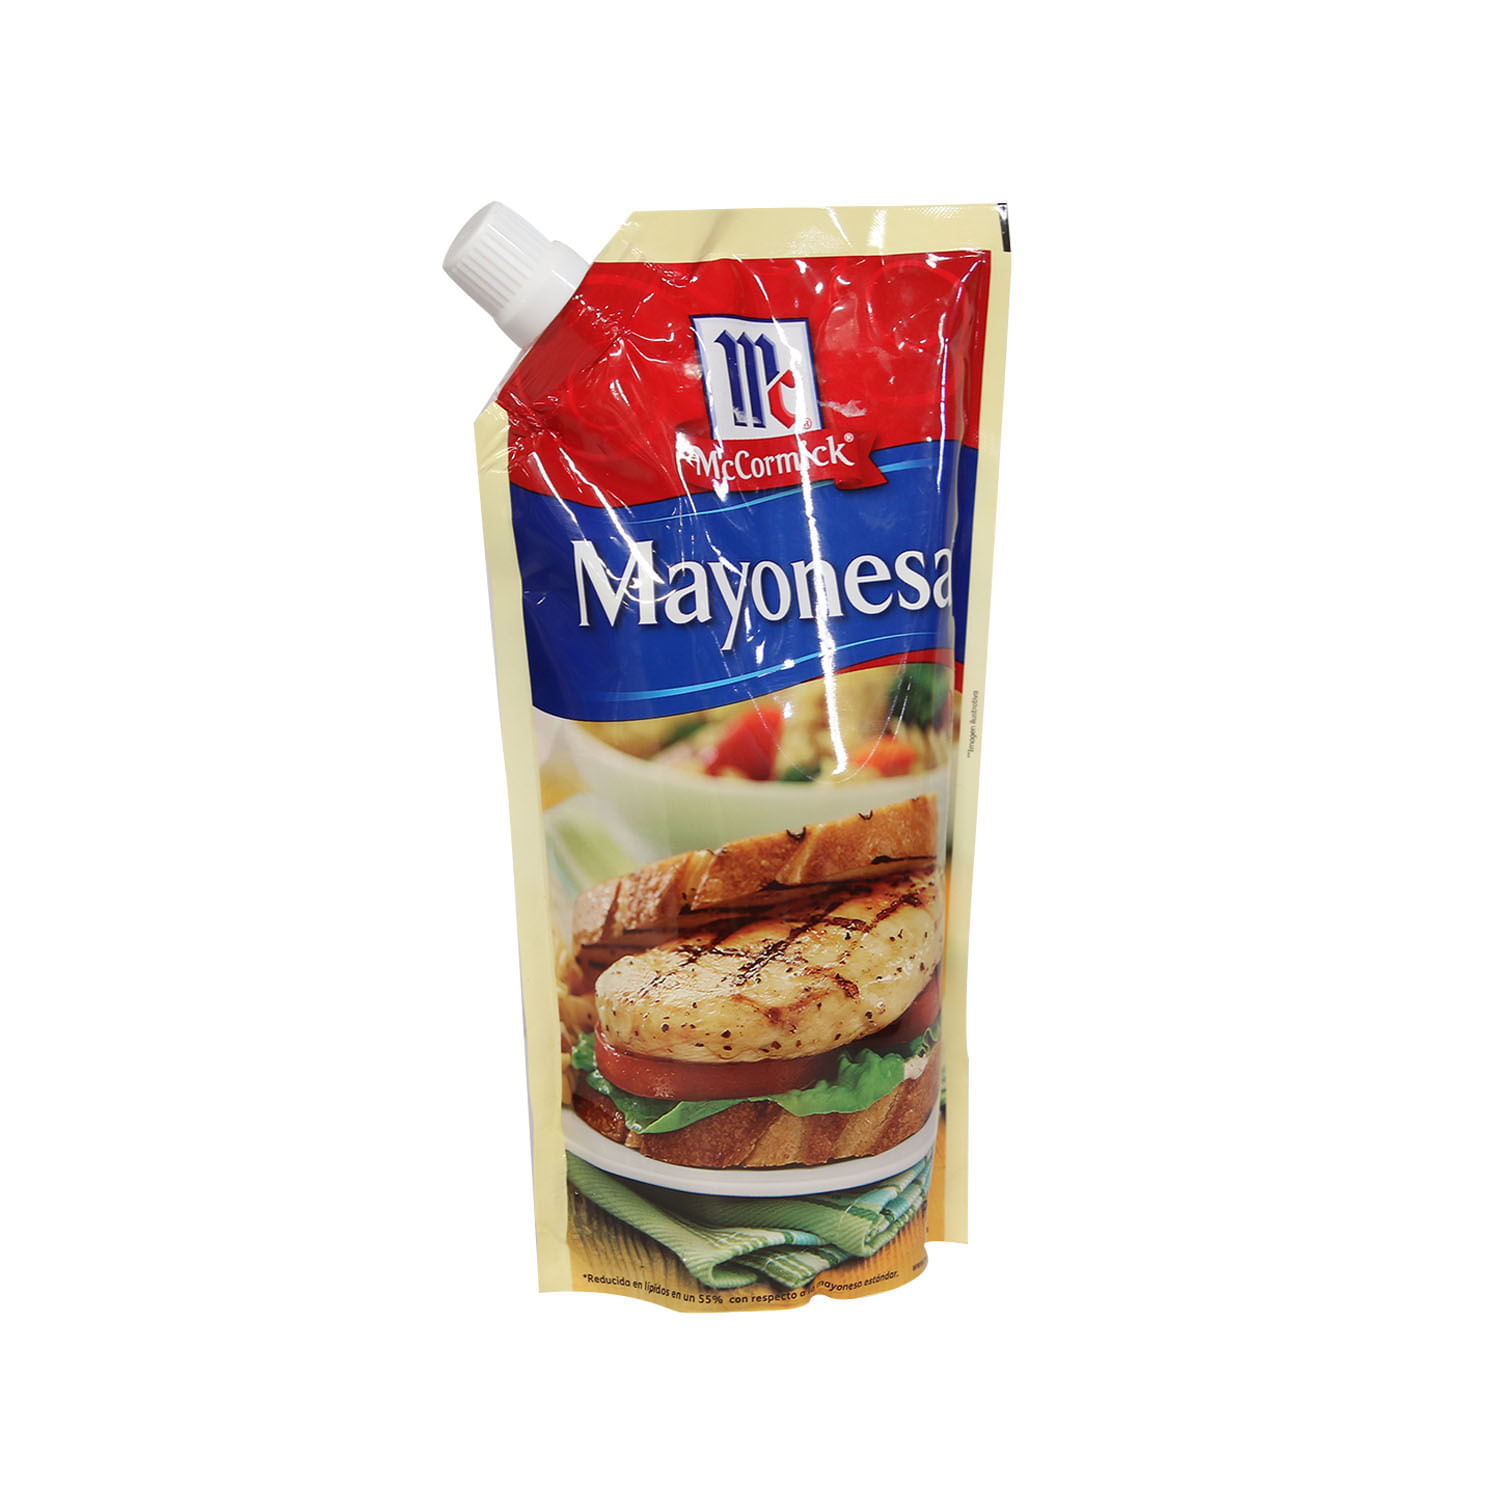 Mayonesa mccormick omega 3 doy pack 400 ml